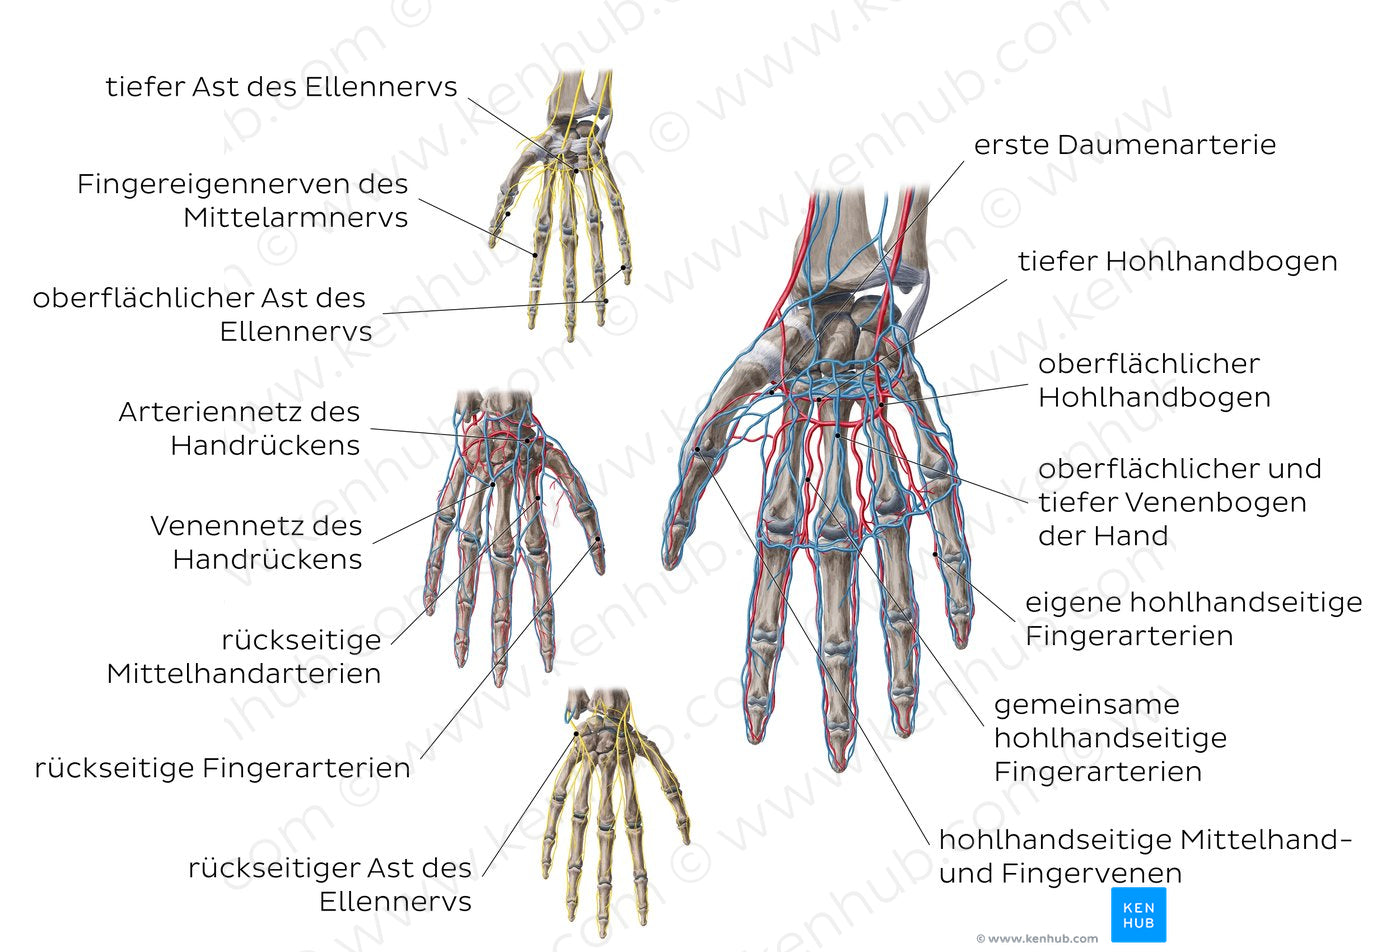 Neurovasculature of the hand (German)